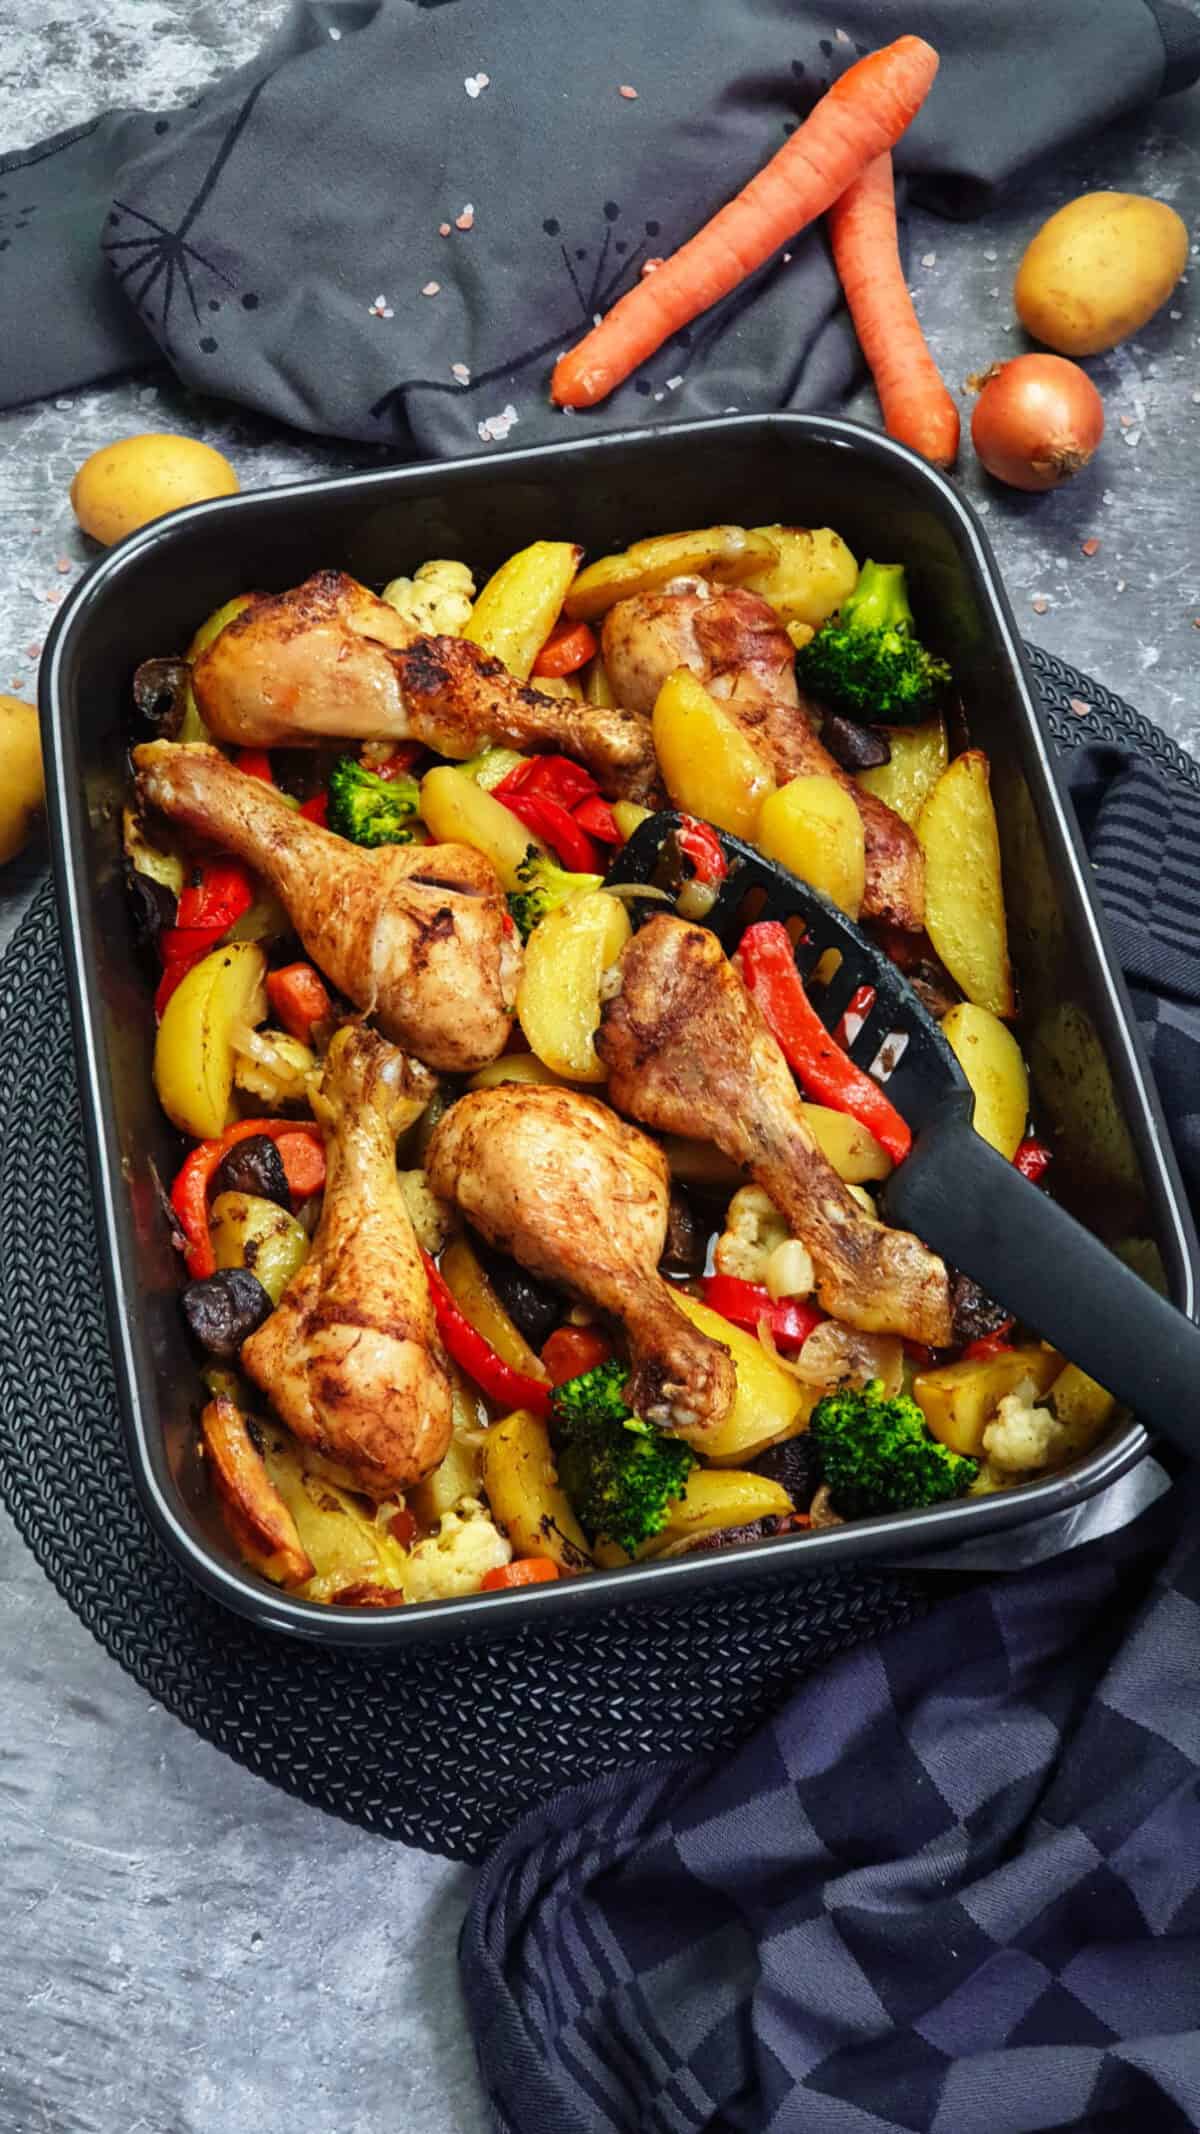 Hähnchenschenkel mit Gemüse und Kartoffeln aus dem Ofen - Lydiasfoodblog